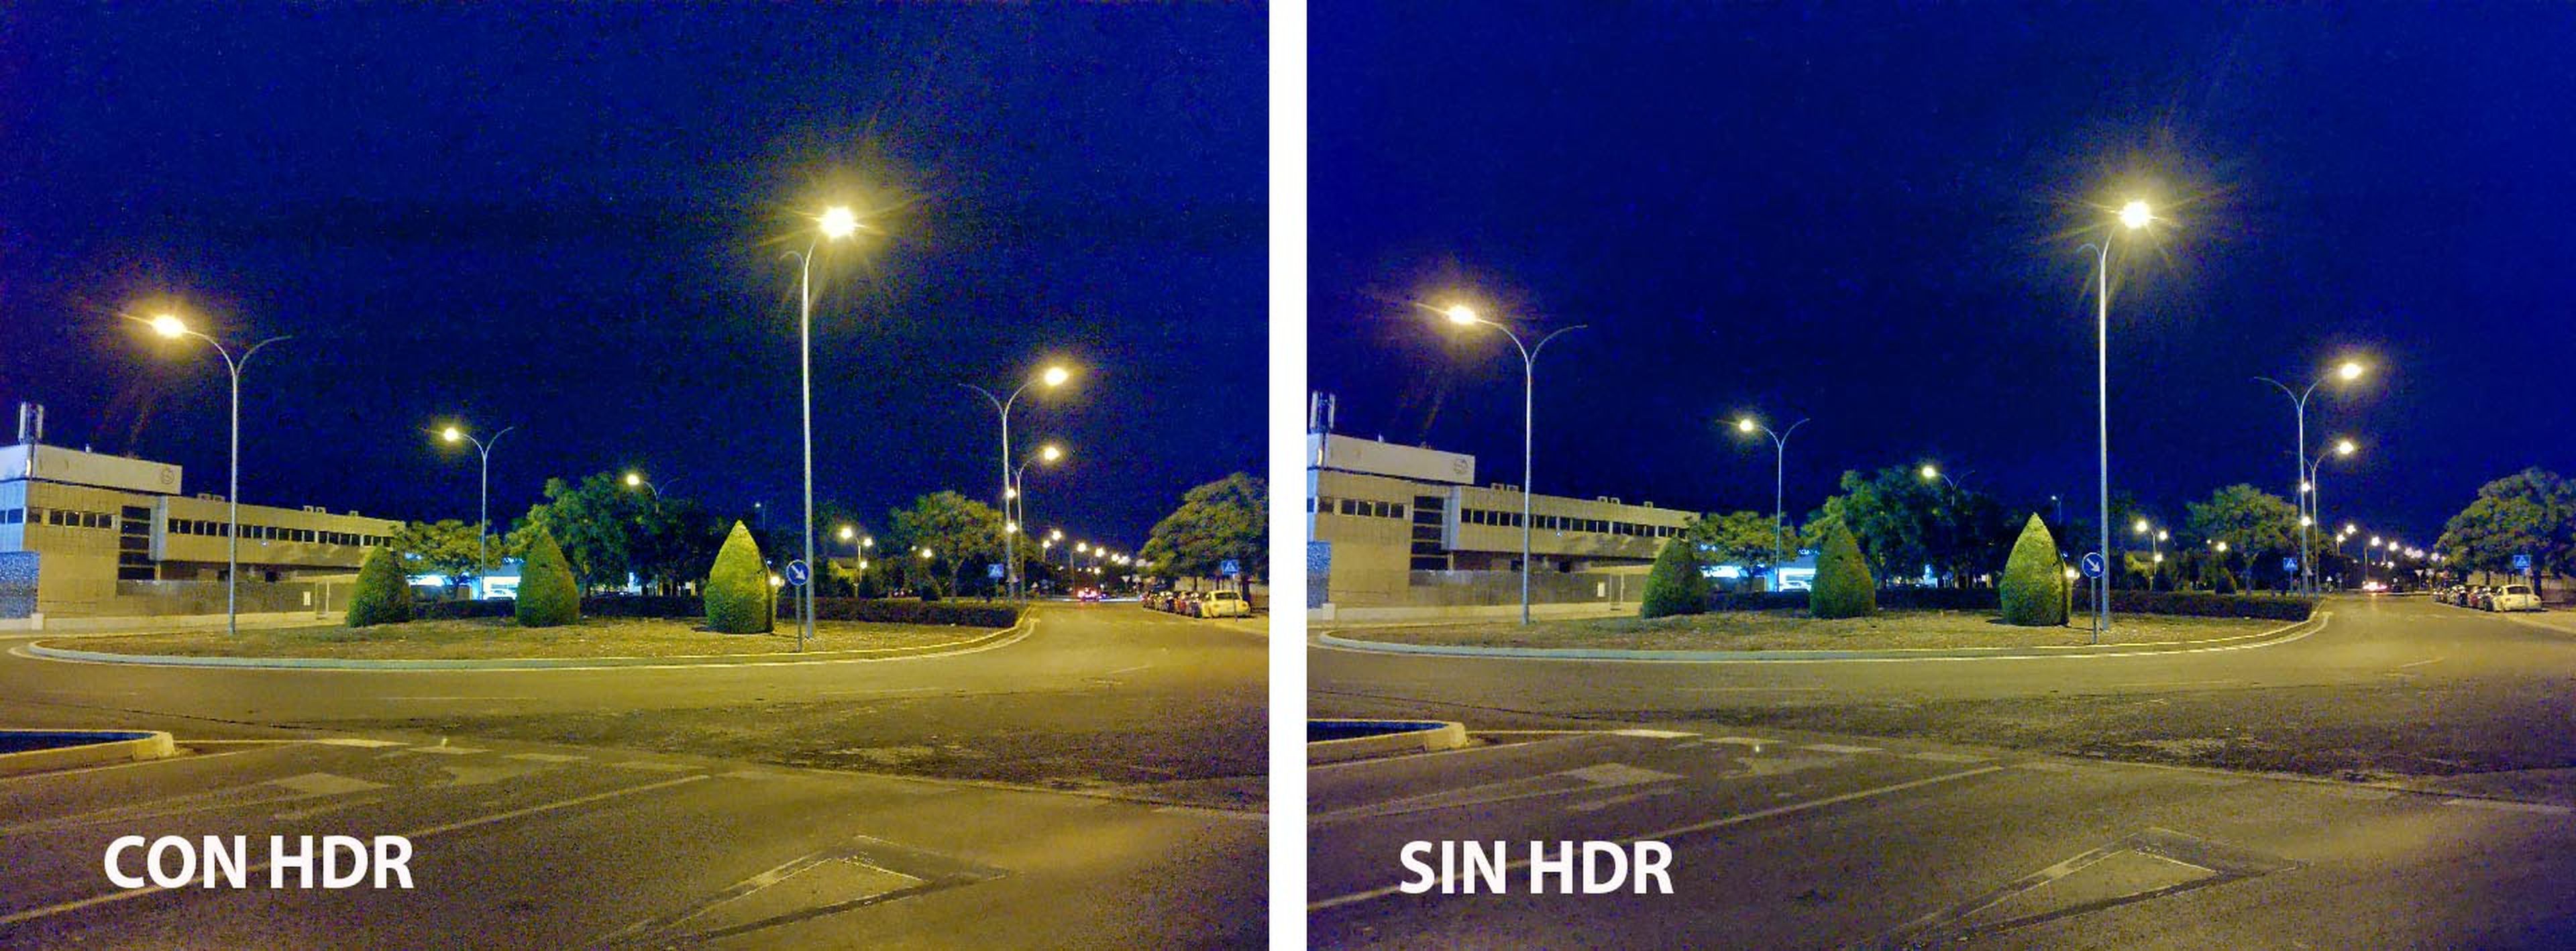 Las fotos nocturnas dejan que desear, y salen mejor si desactivamos el HDR.